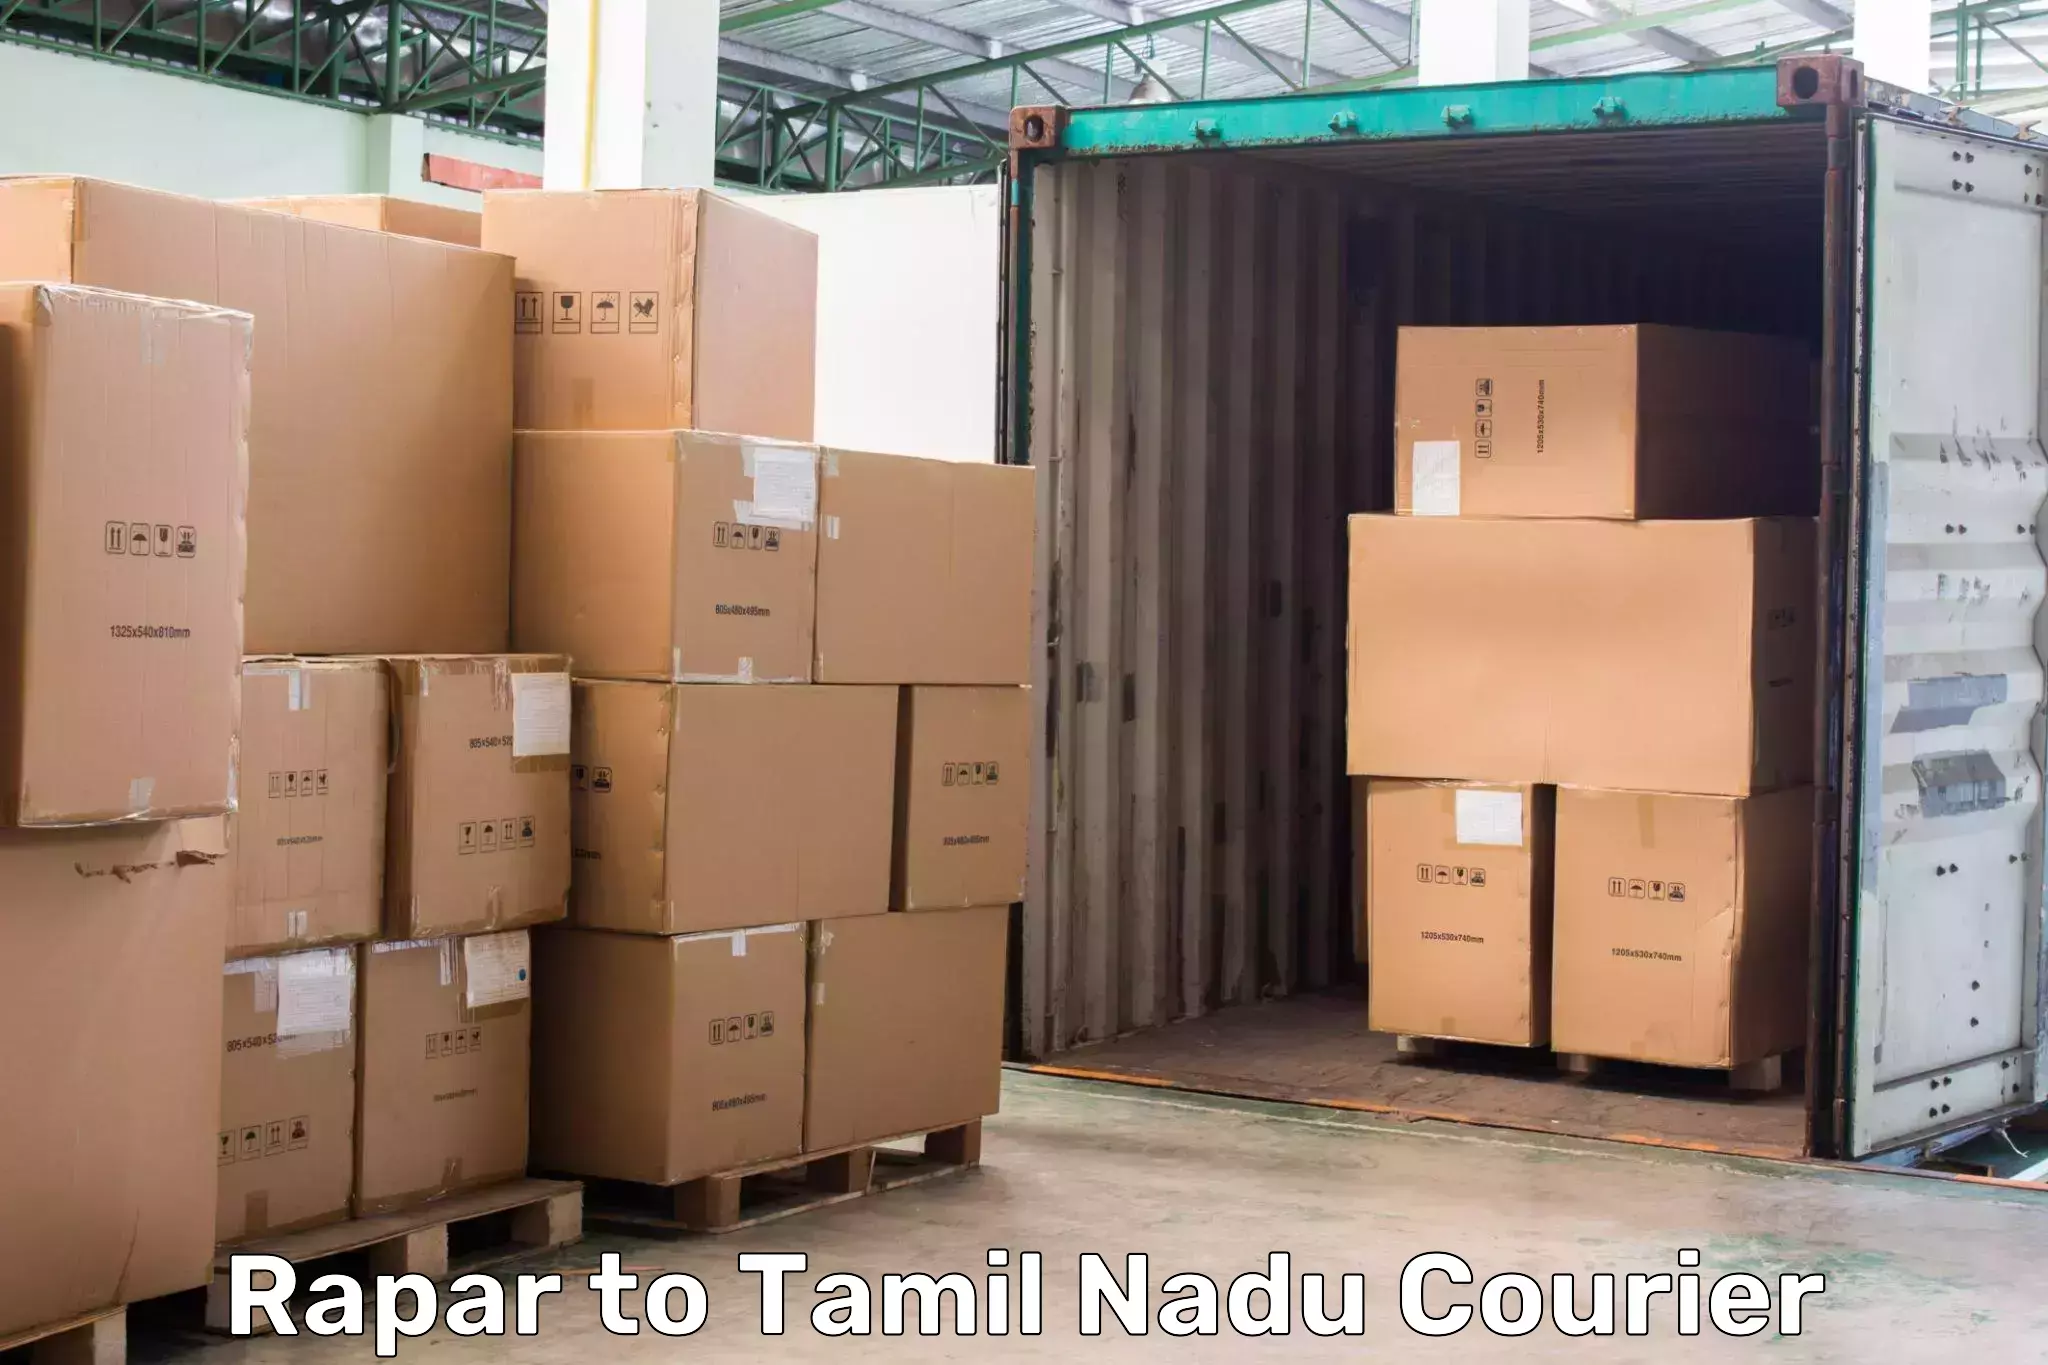 Affordable parcel service Rapar to Tamil Nadu